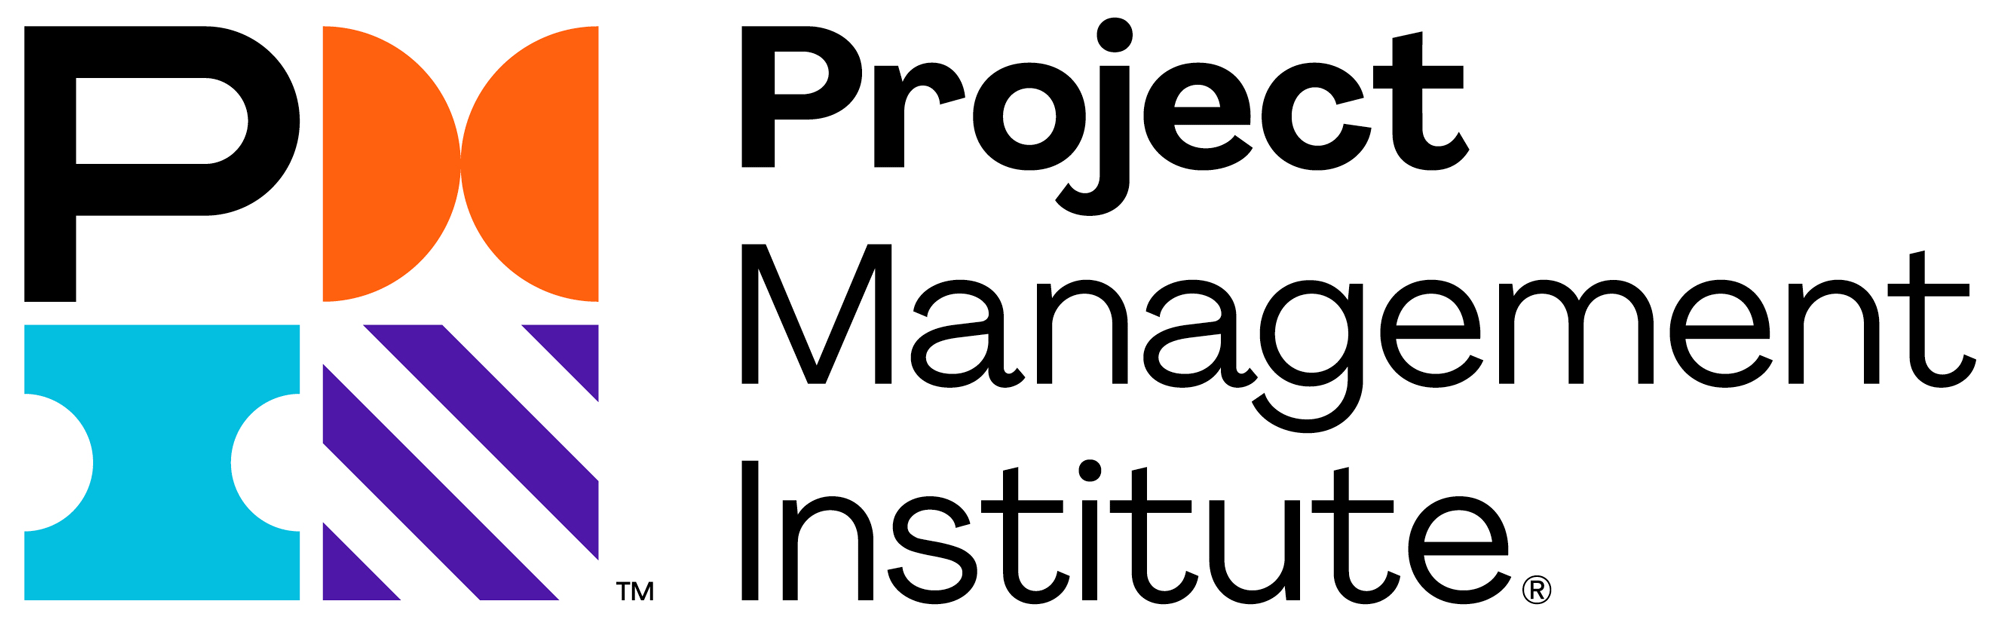 项目管理协会徽标